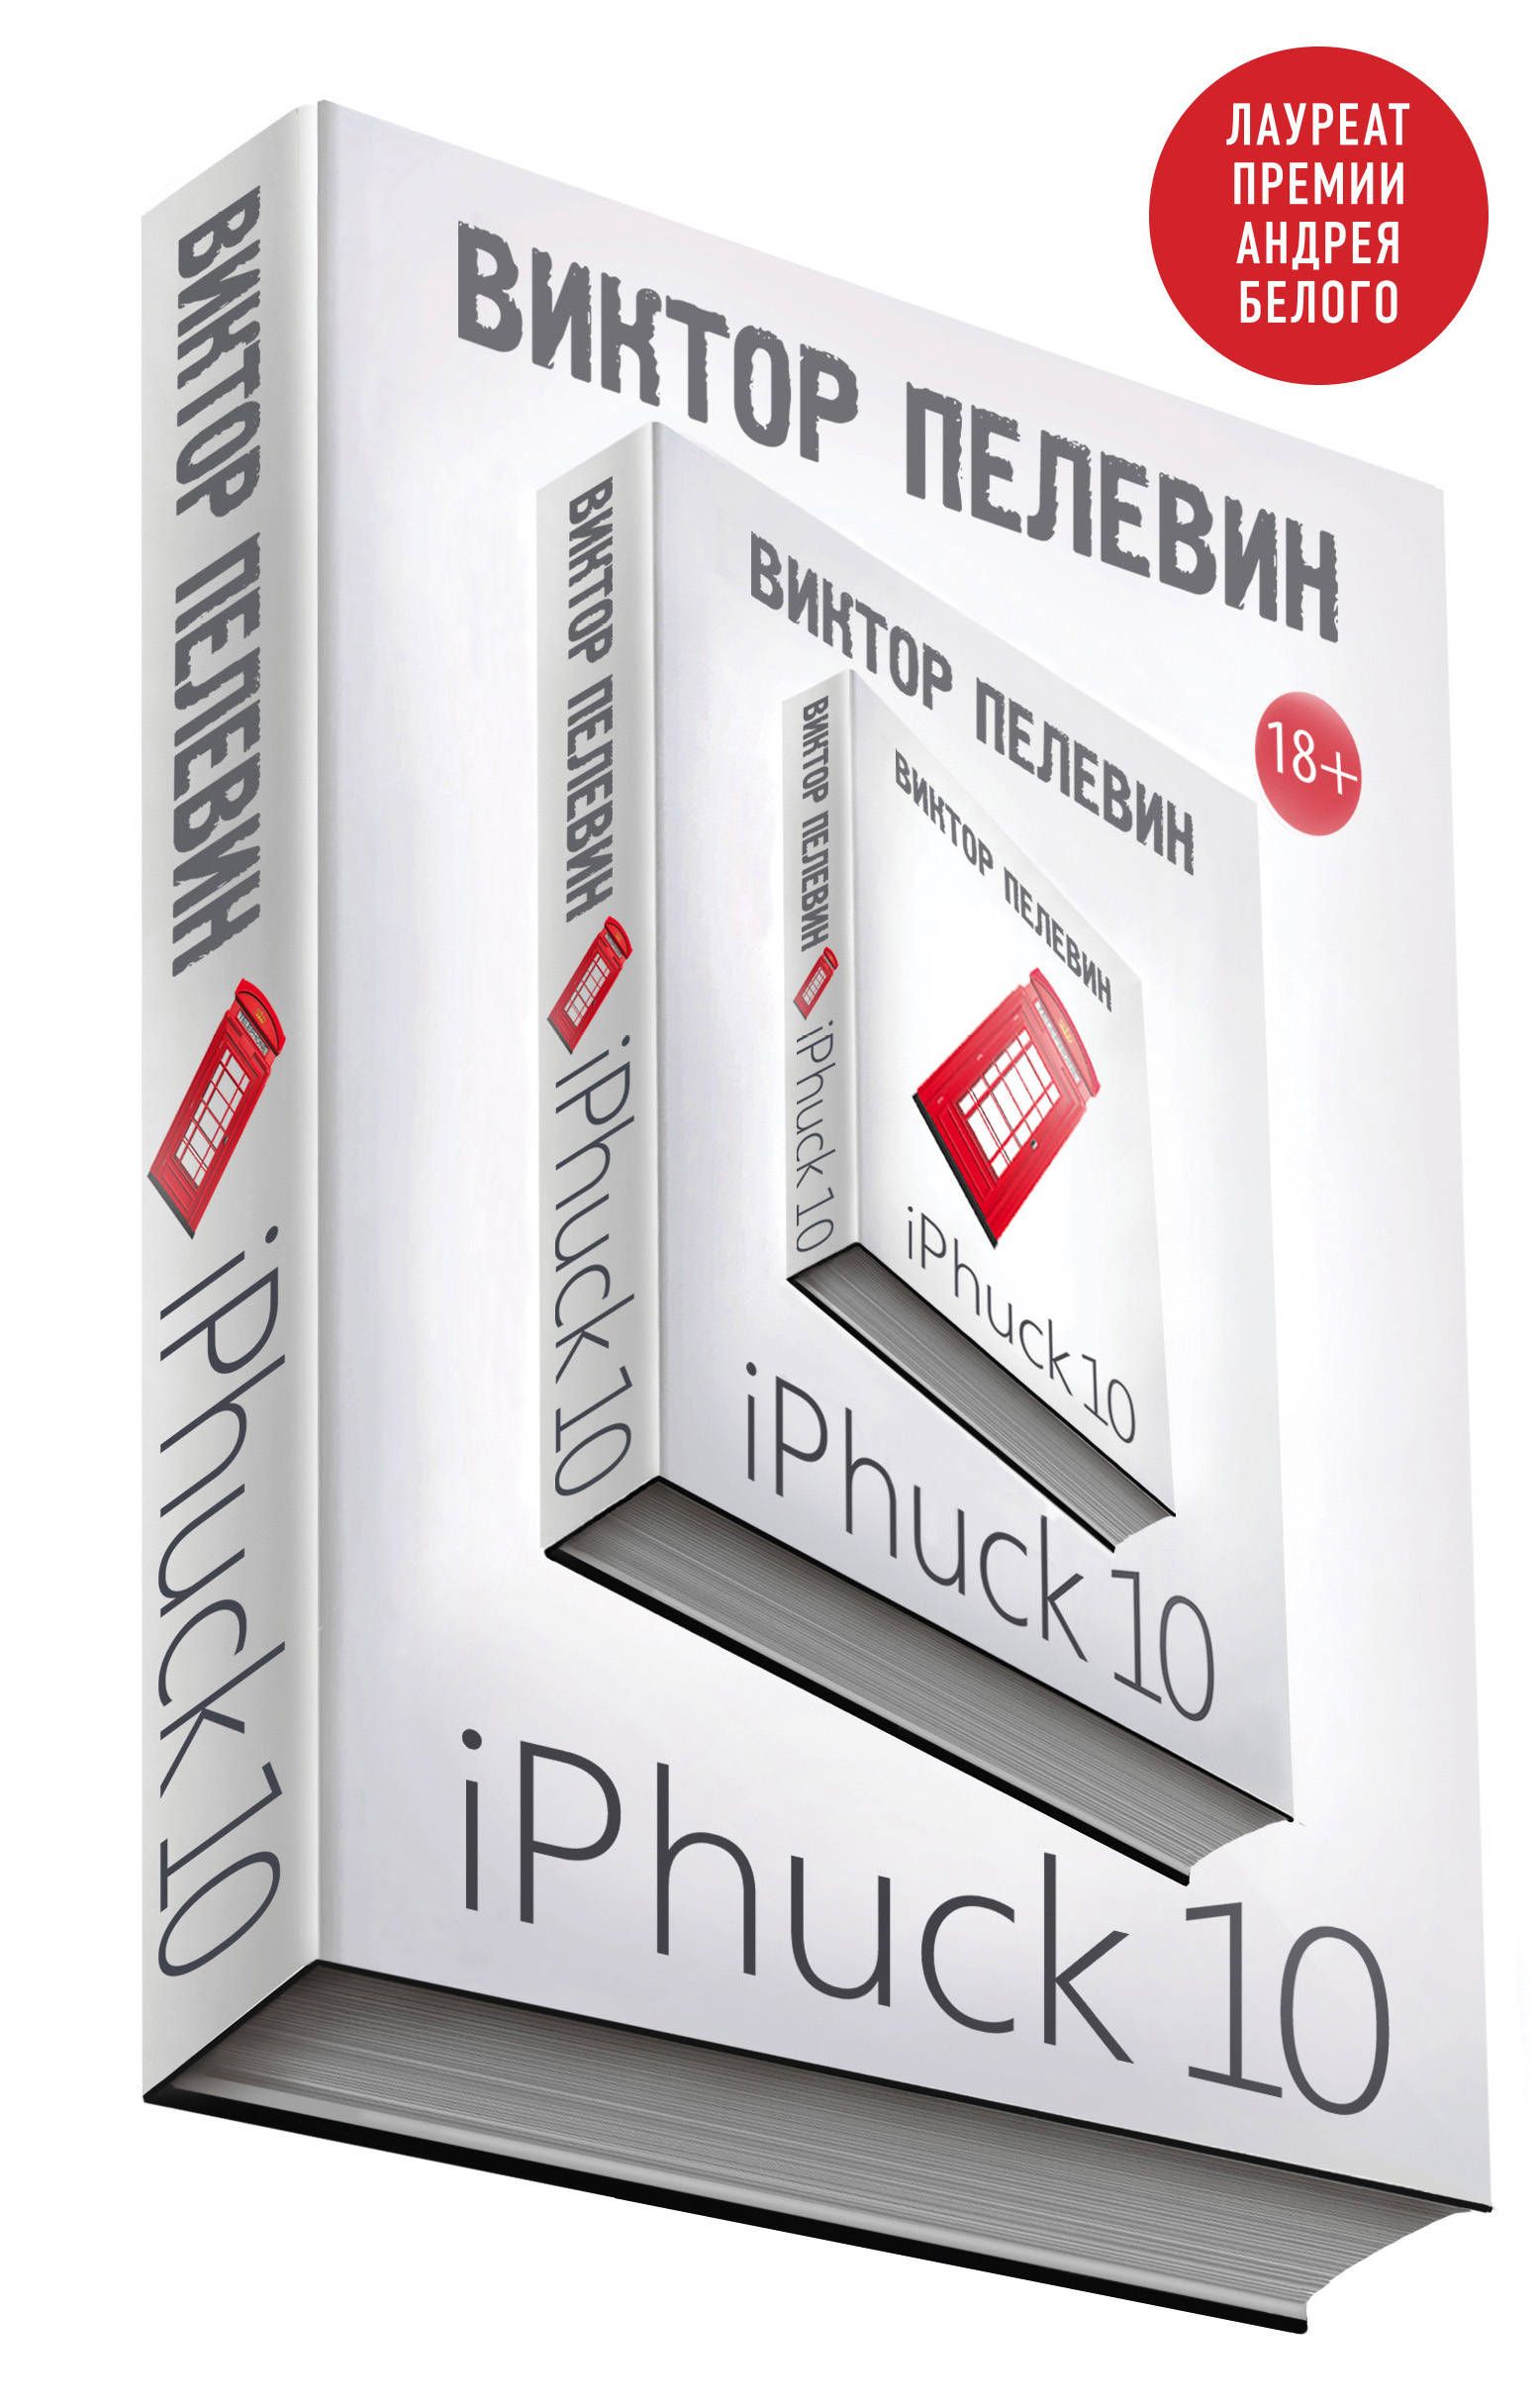 Пелевин iphuck 10 книга. Пелевин айфак. IPHUCK 10 иллюстрации. Оглавление книги IPHUCK 10.